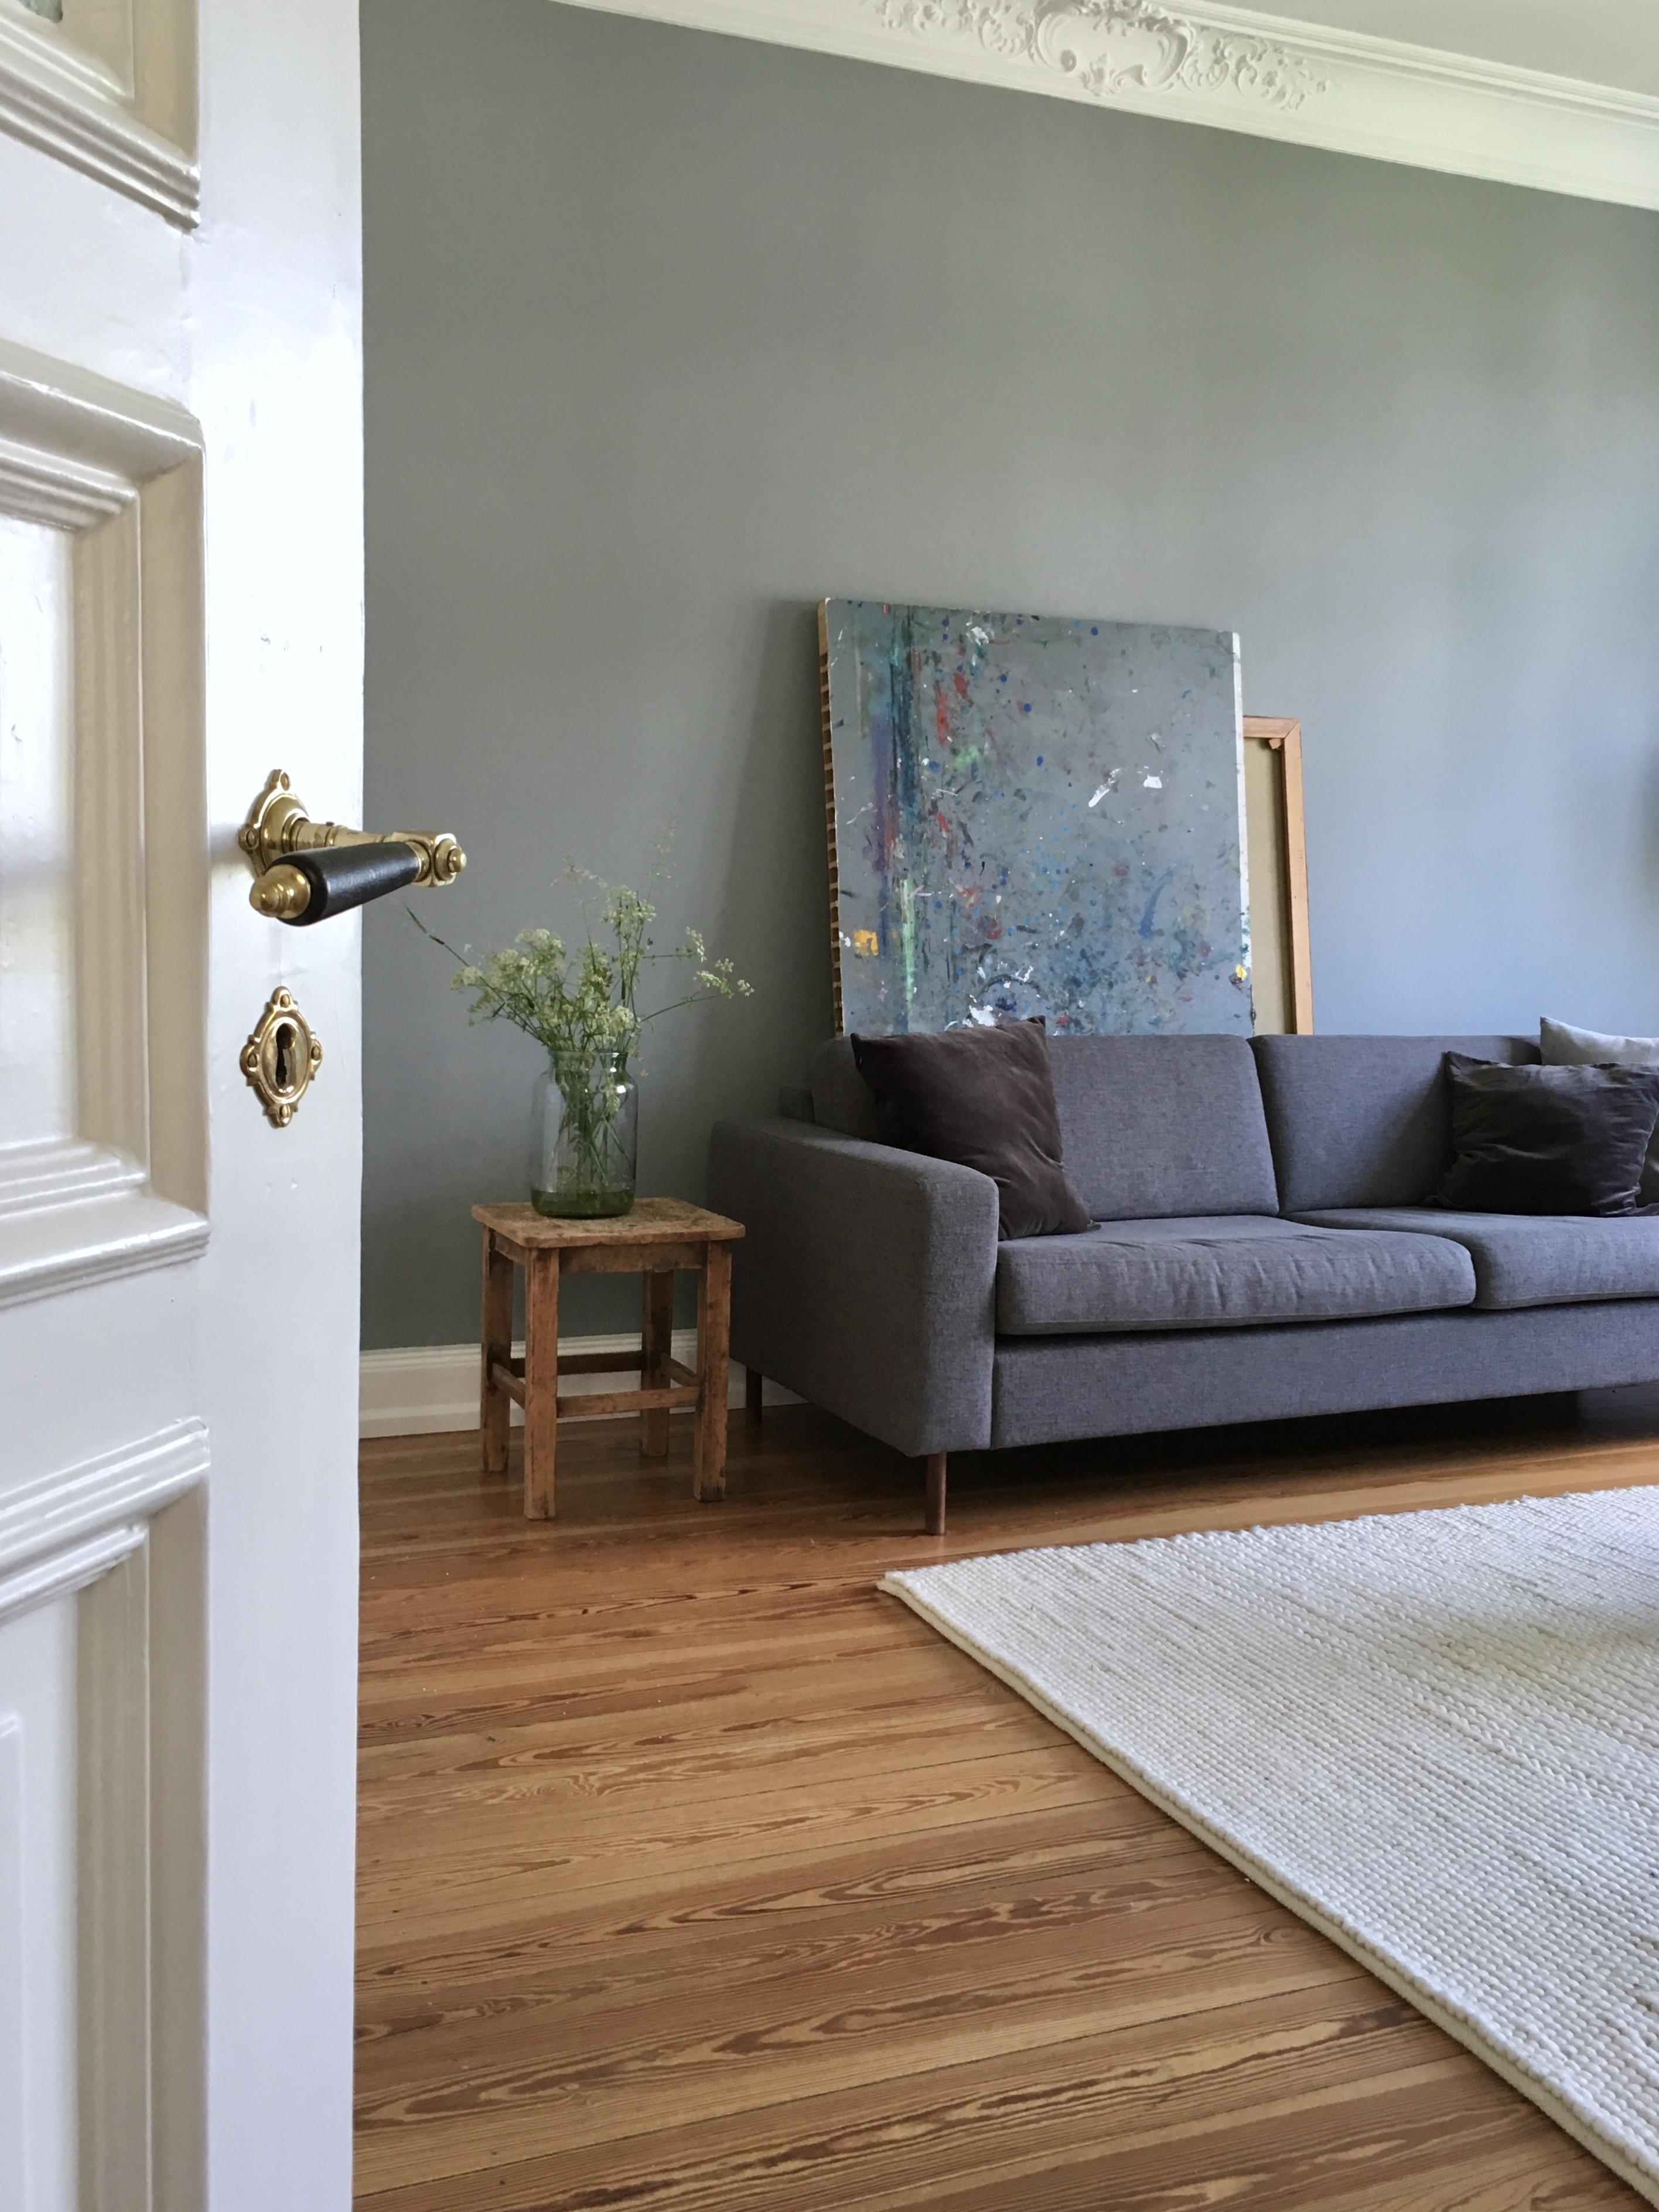 sofa oder sonne? heute in hh leicht zu beantworten! #couch #sofa #interior #living #altbau #altbauliebe #dielenboden